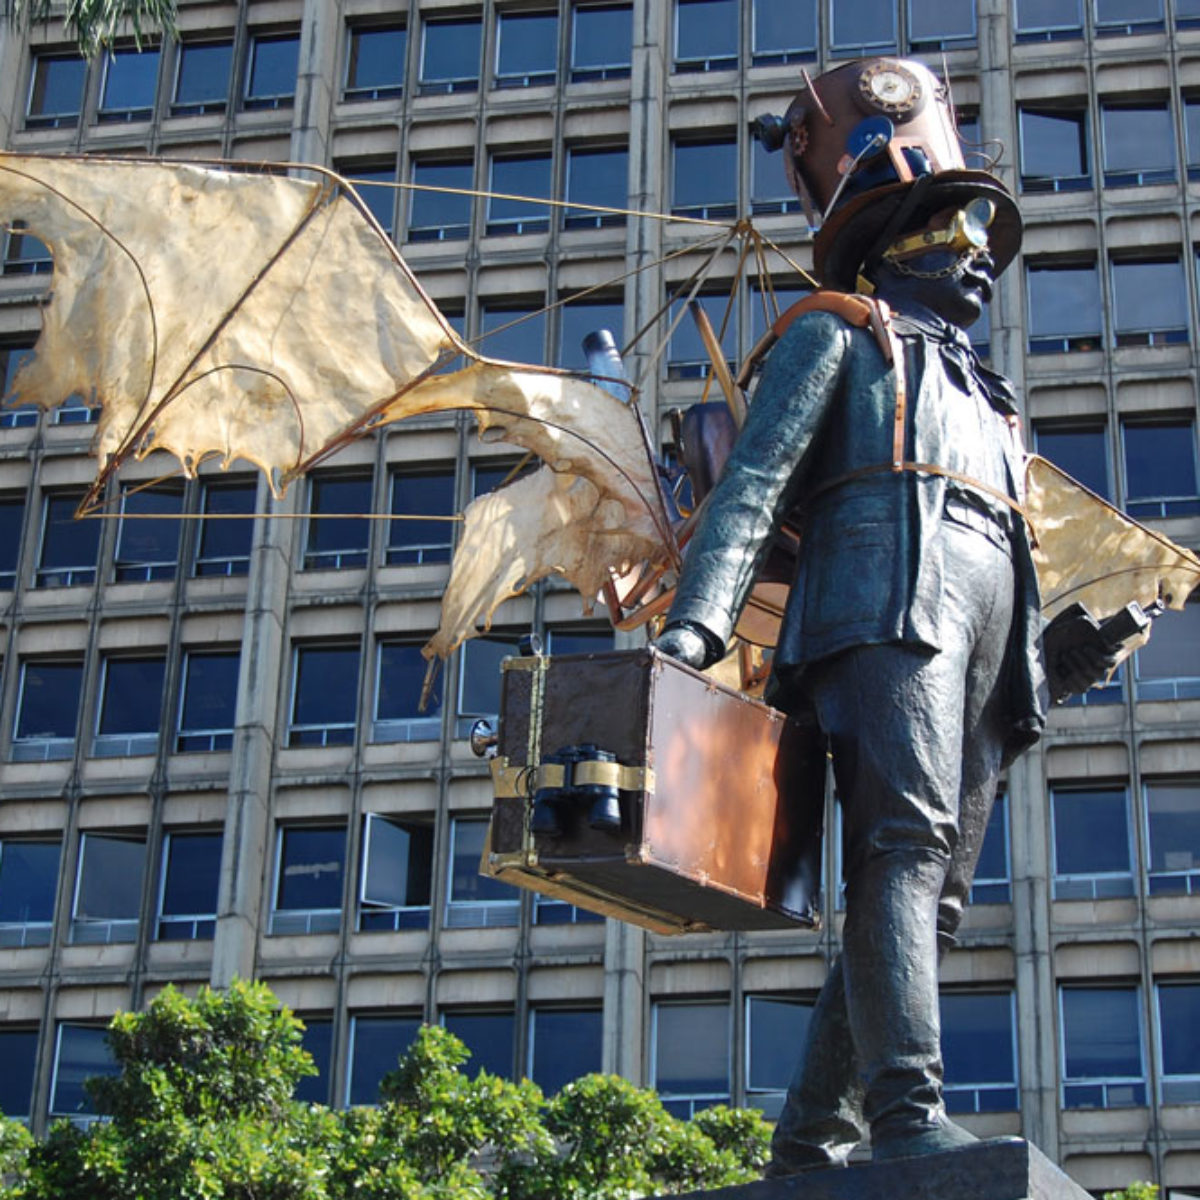 La escultura de Cisneros ubicada en la sede de la Fundación Ferrocarril de Antioquia en Medellín, intervenida con objetos Steampunk en 2015.